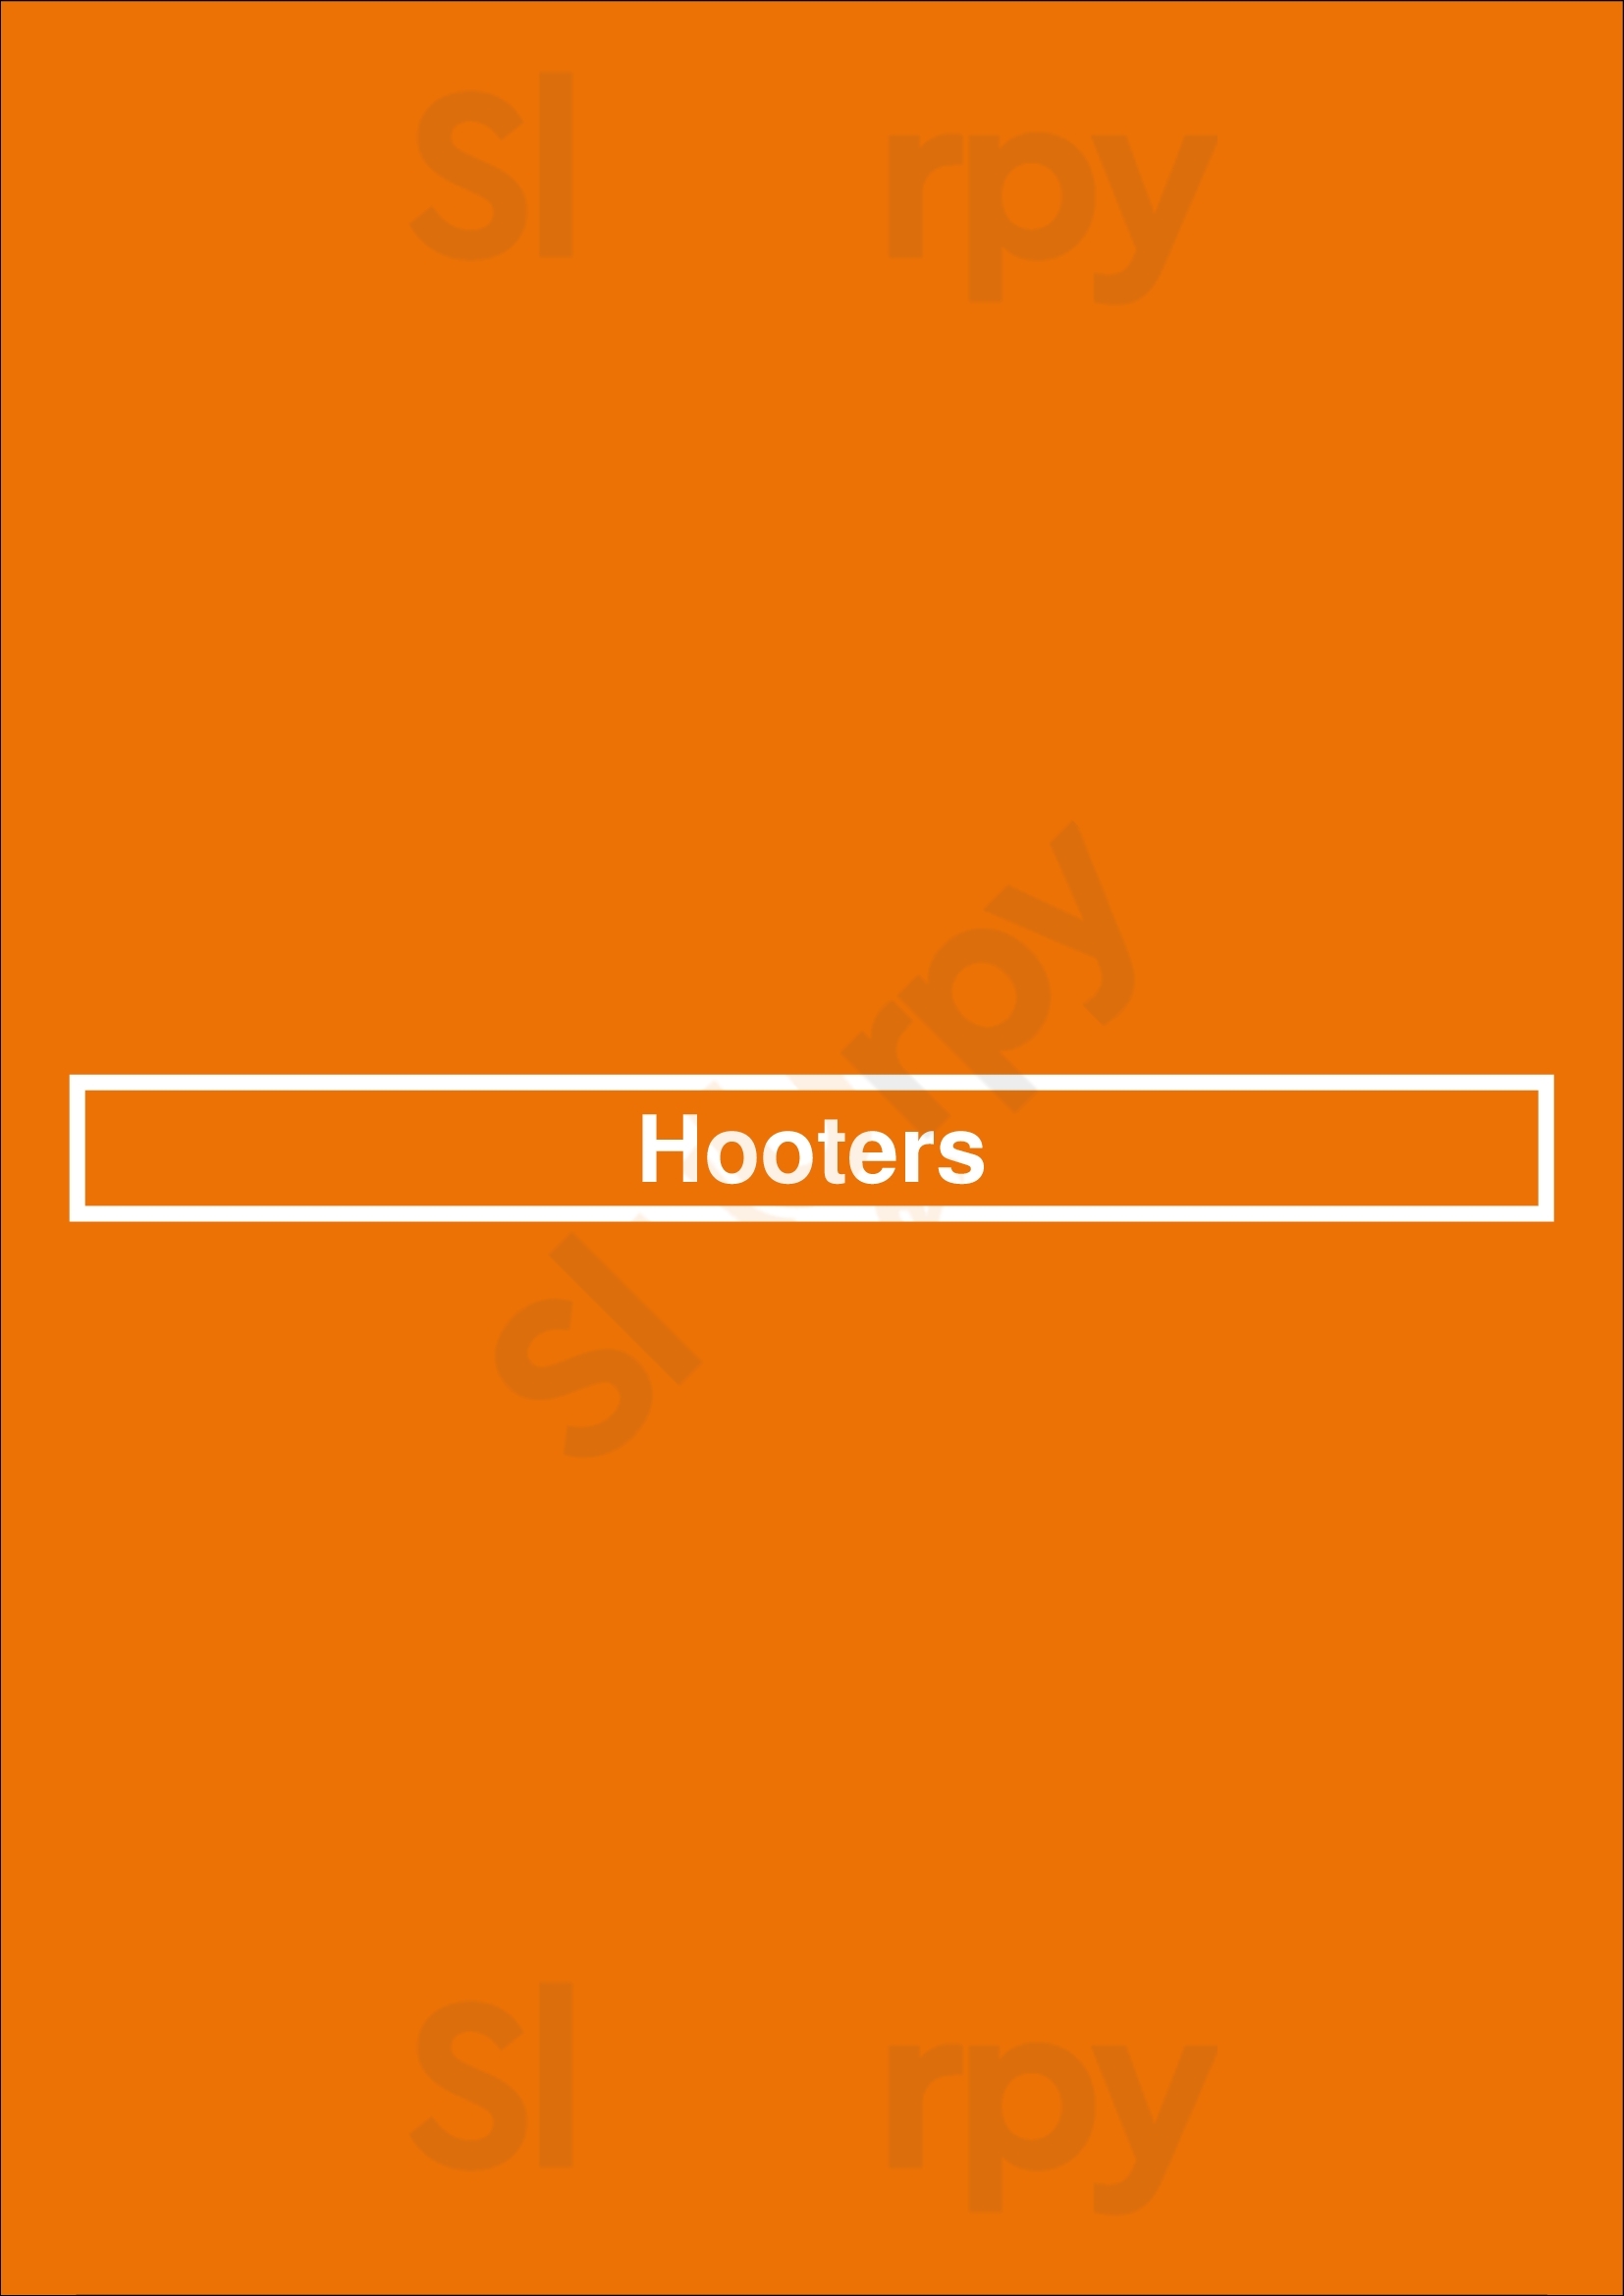 Hooters Saint Louis Menu - 1